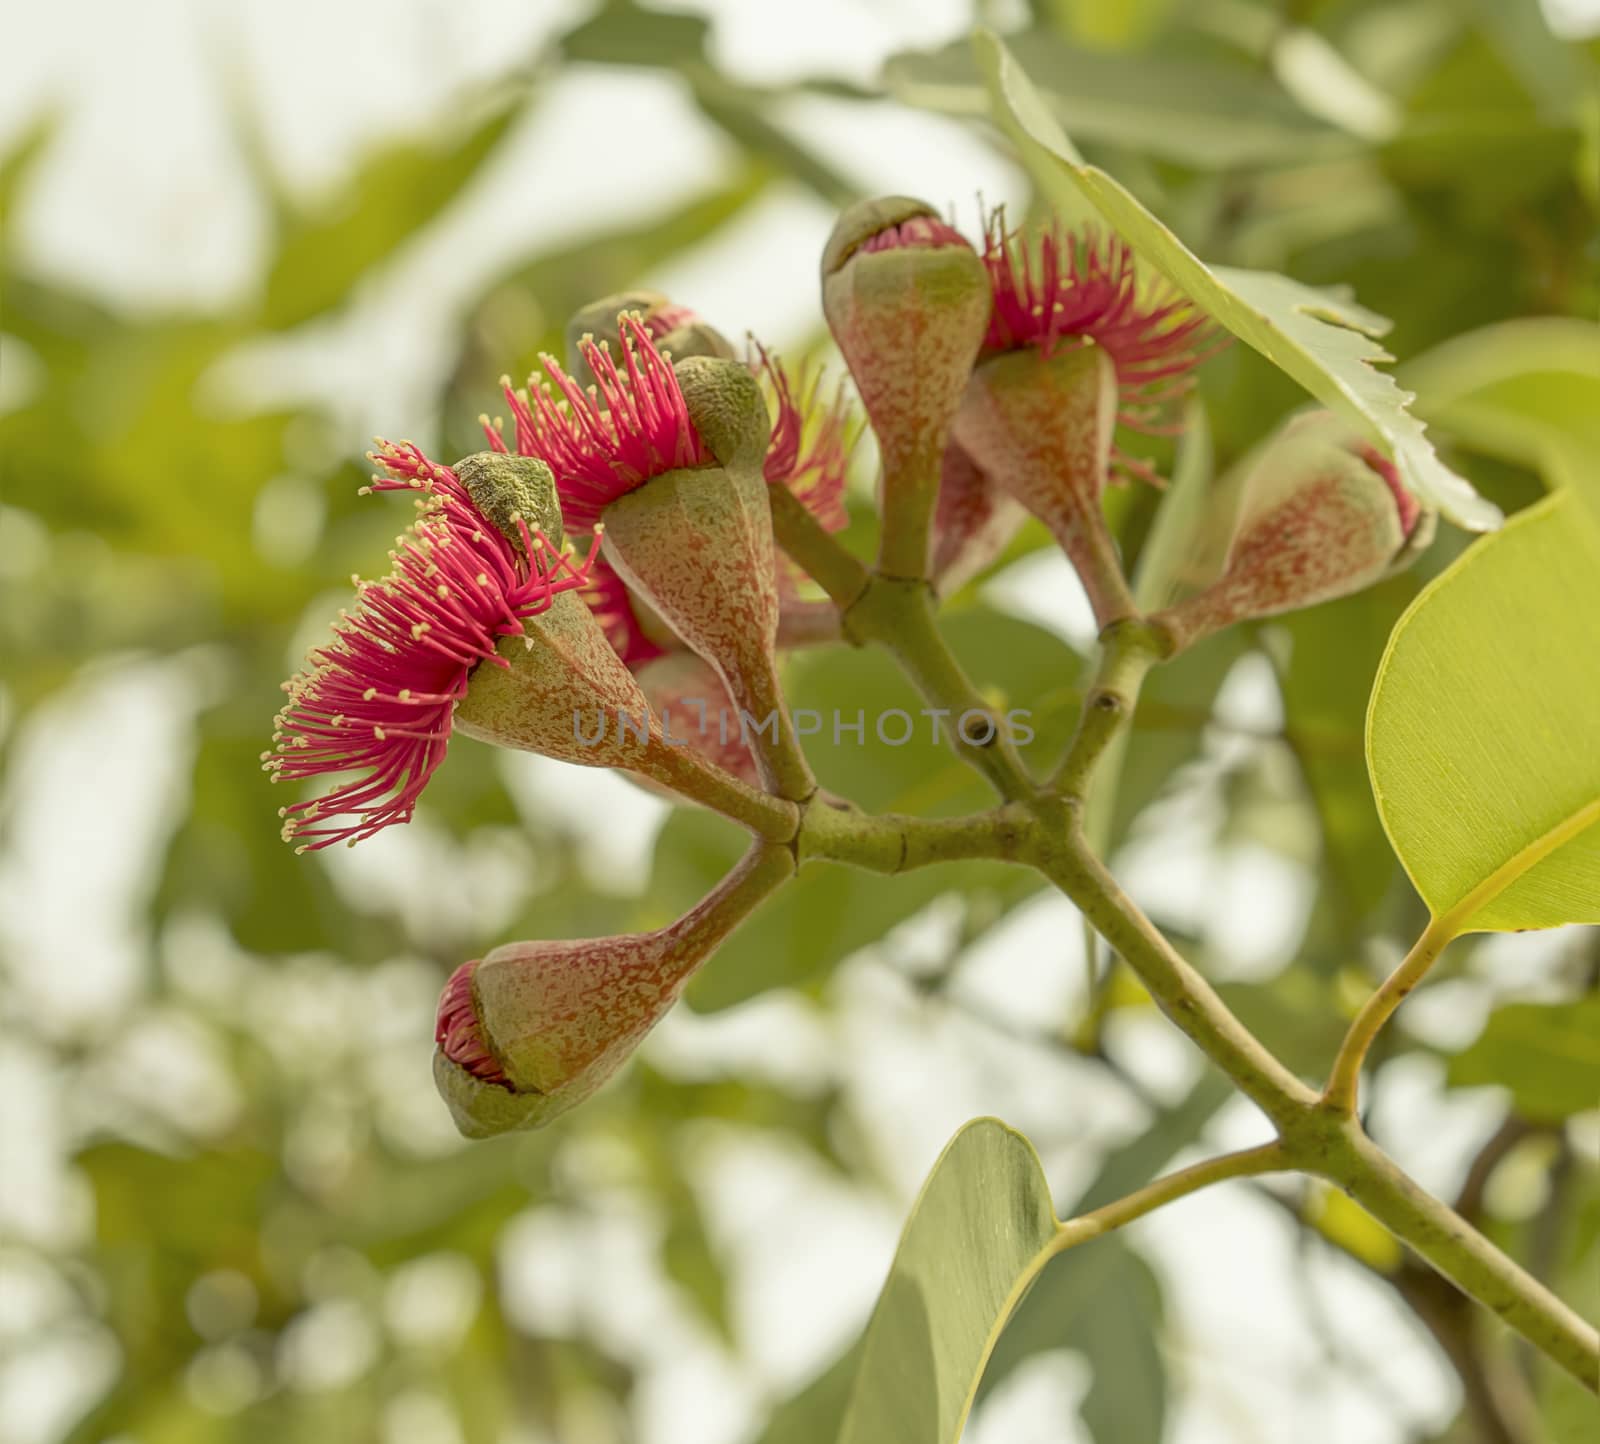 Flowering stage of Australian gumnuts by sherj